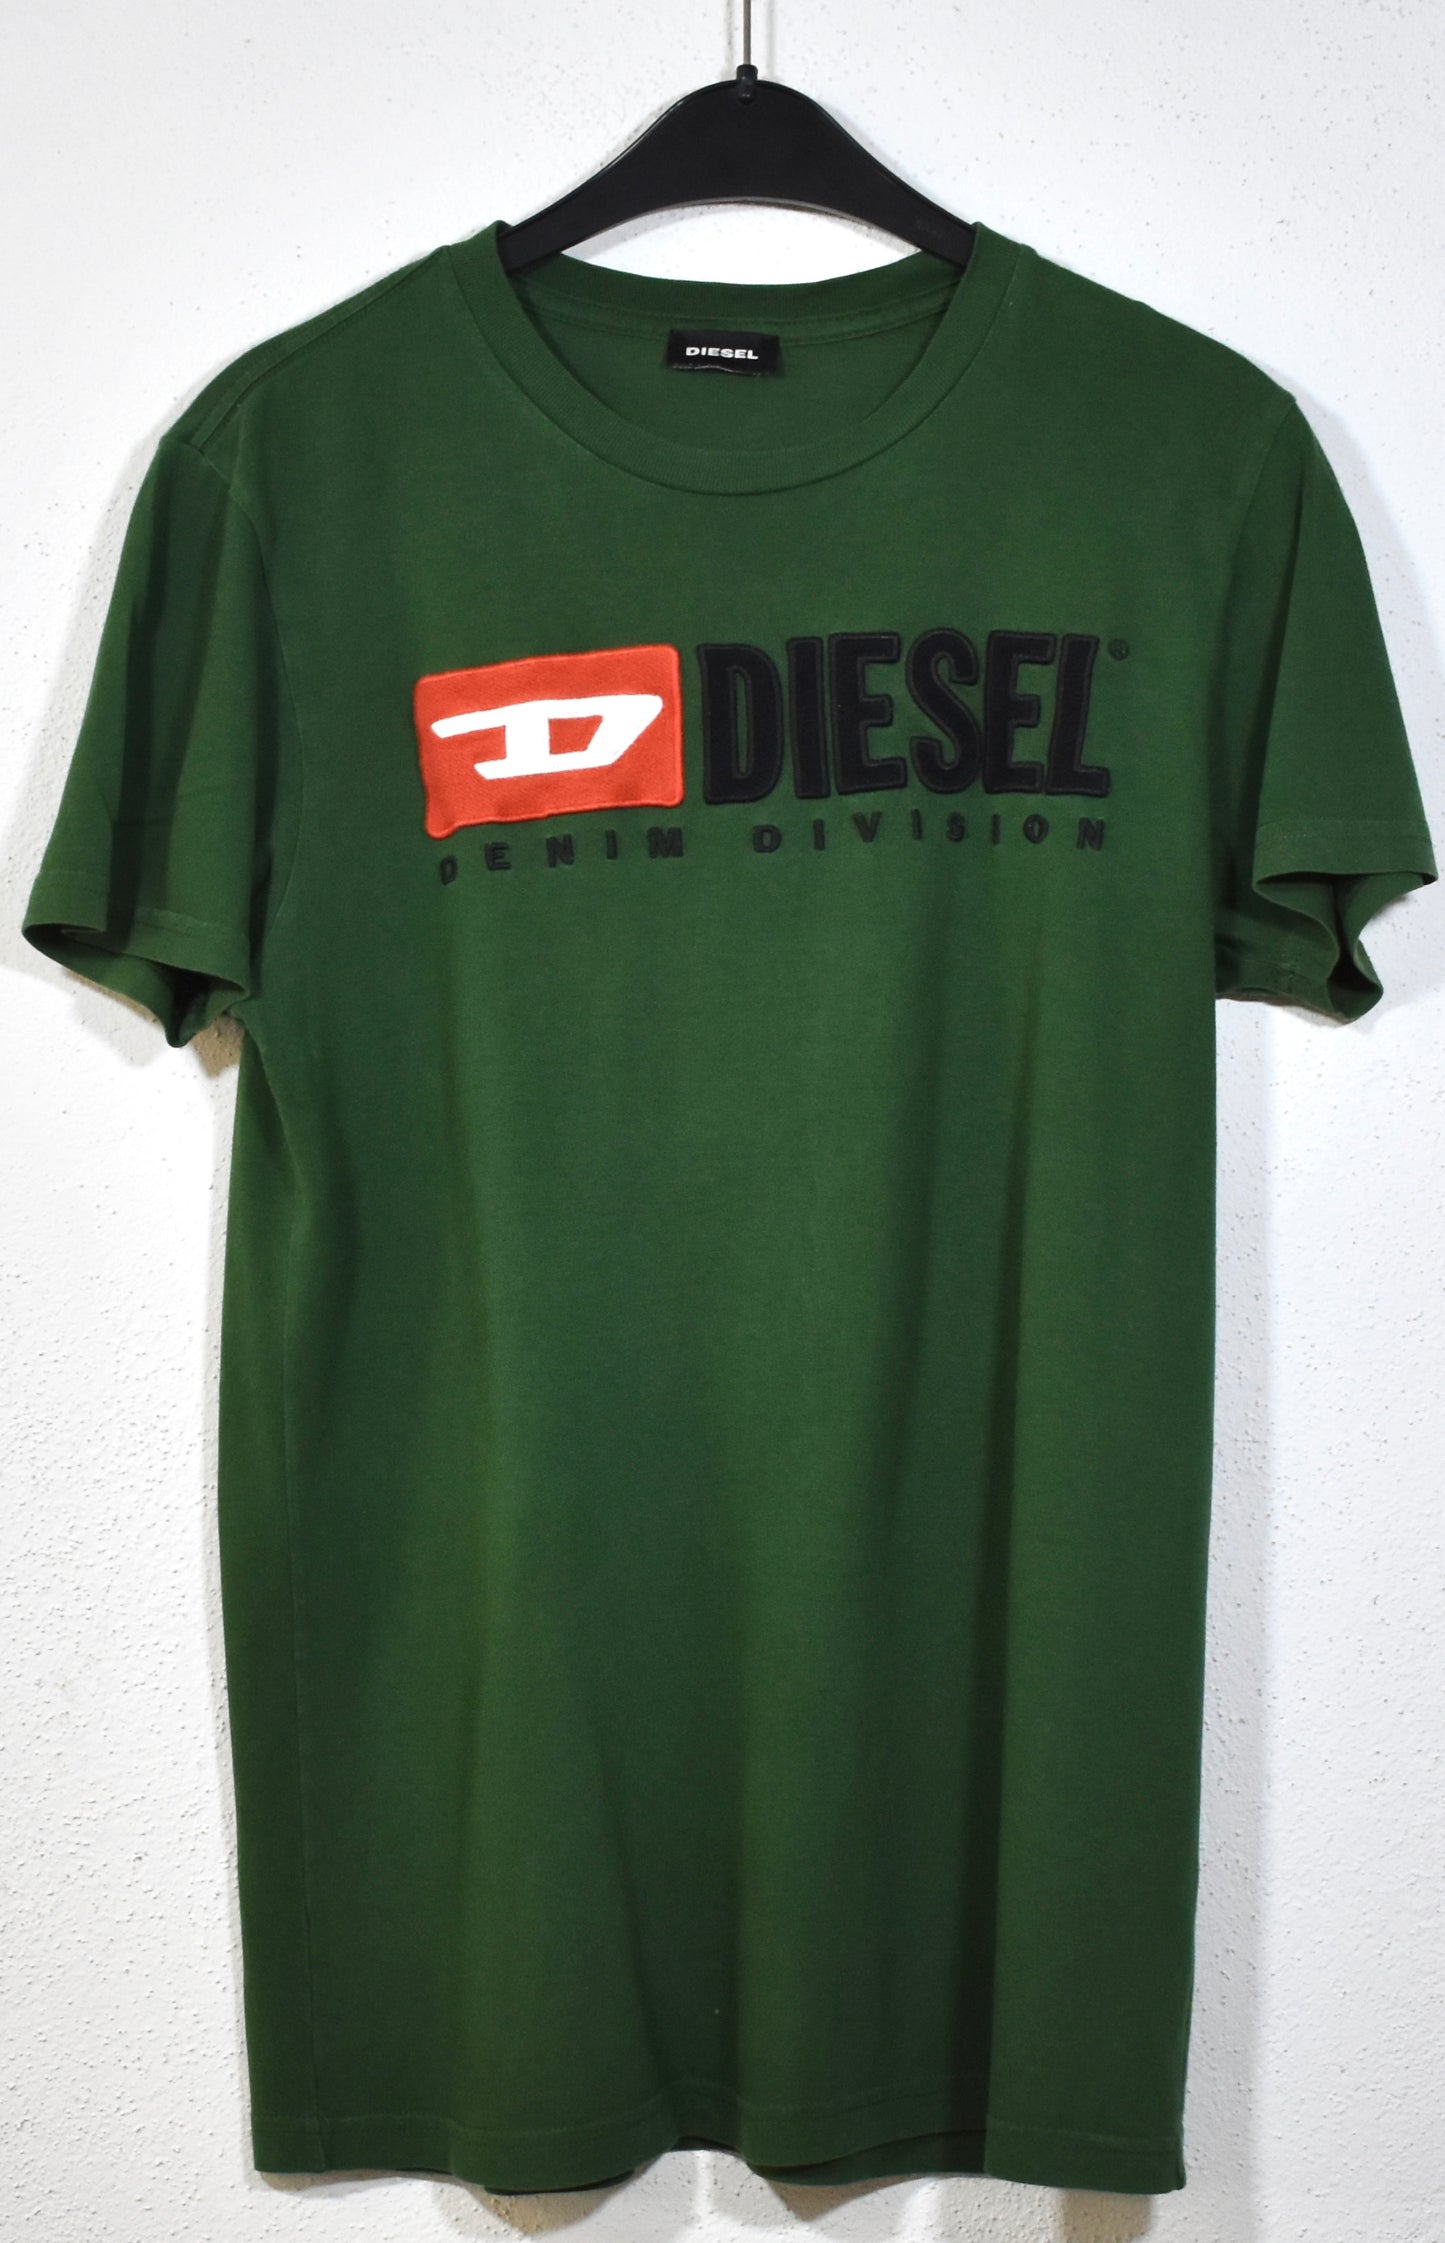 Diesel TEE